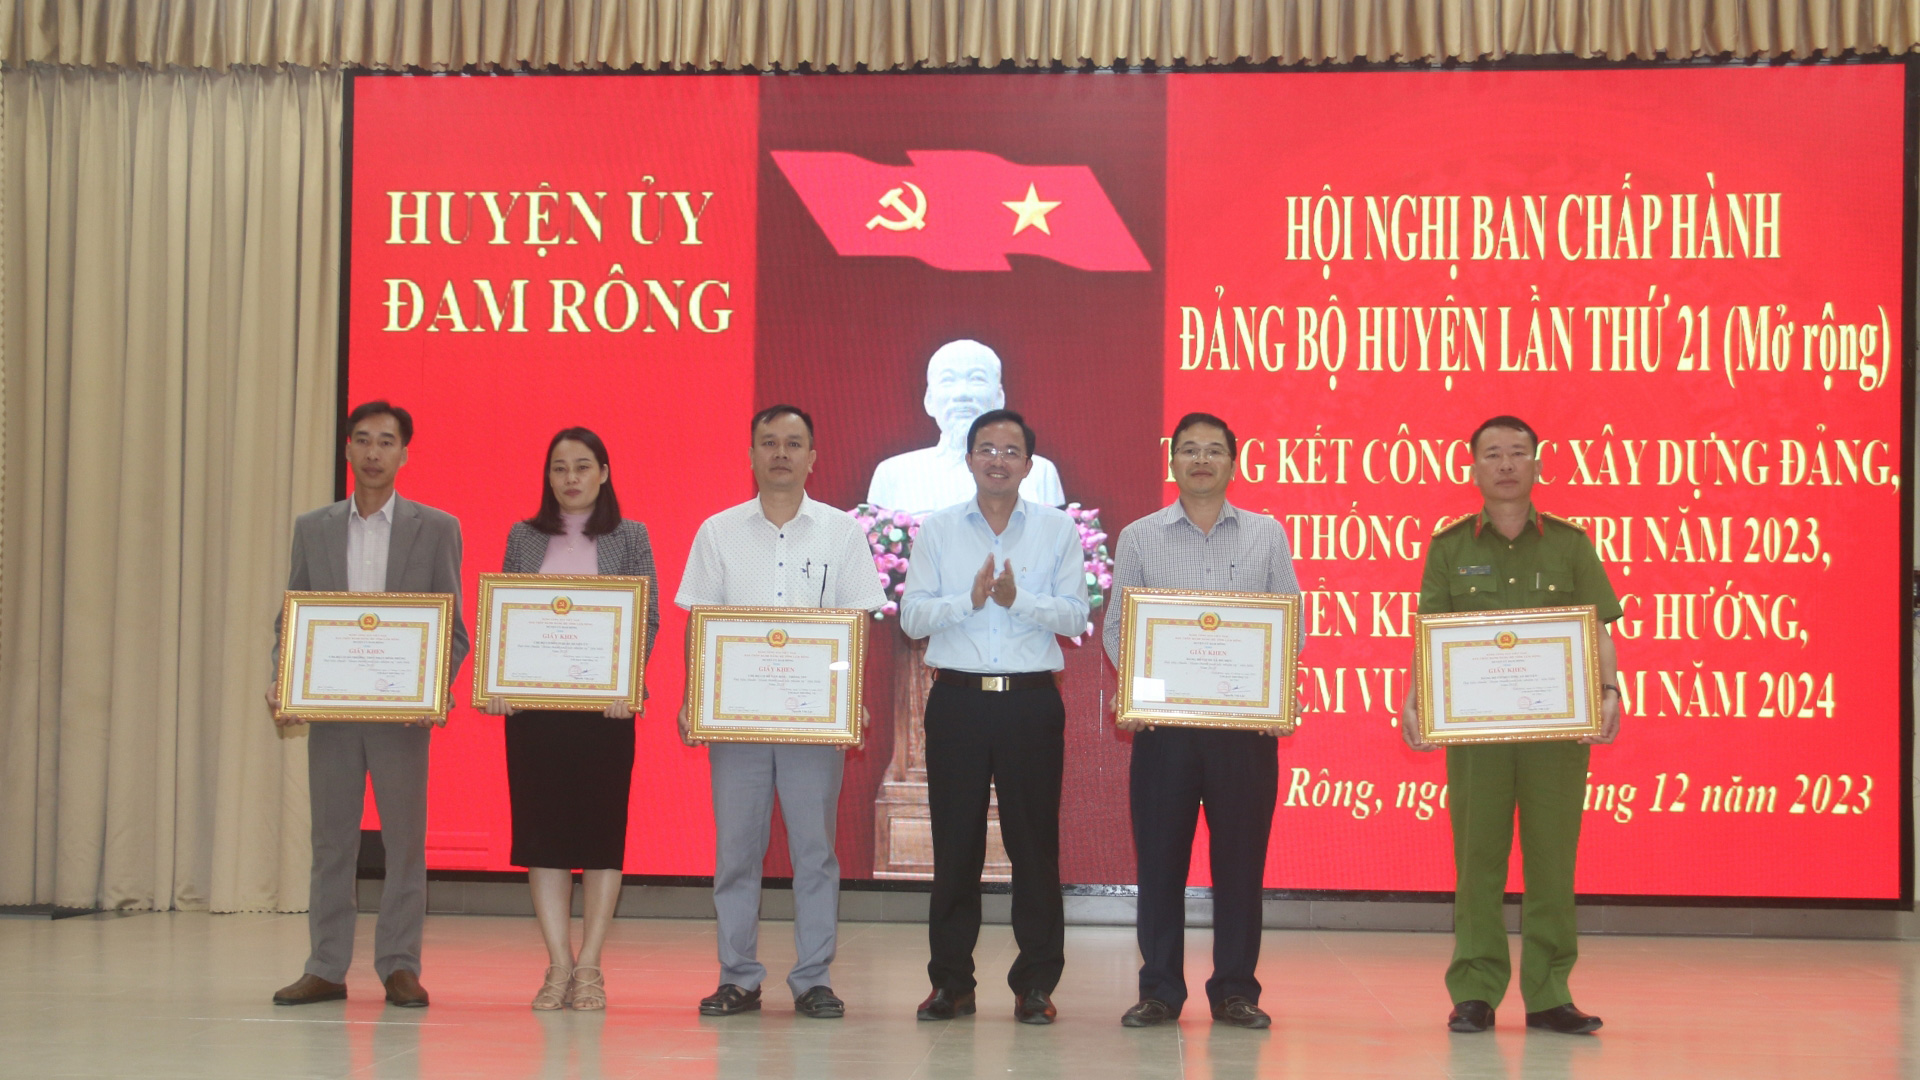 Đam Rông tổ chức Hội nghị Ban Chấp hành Đảng bộ huyện lần thứ 21